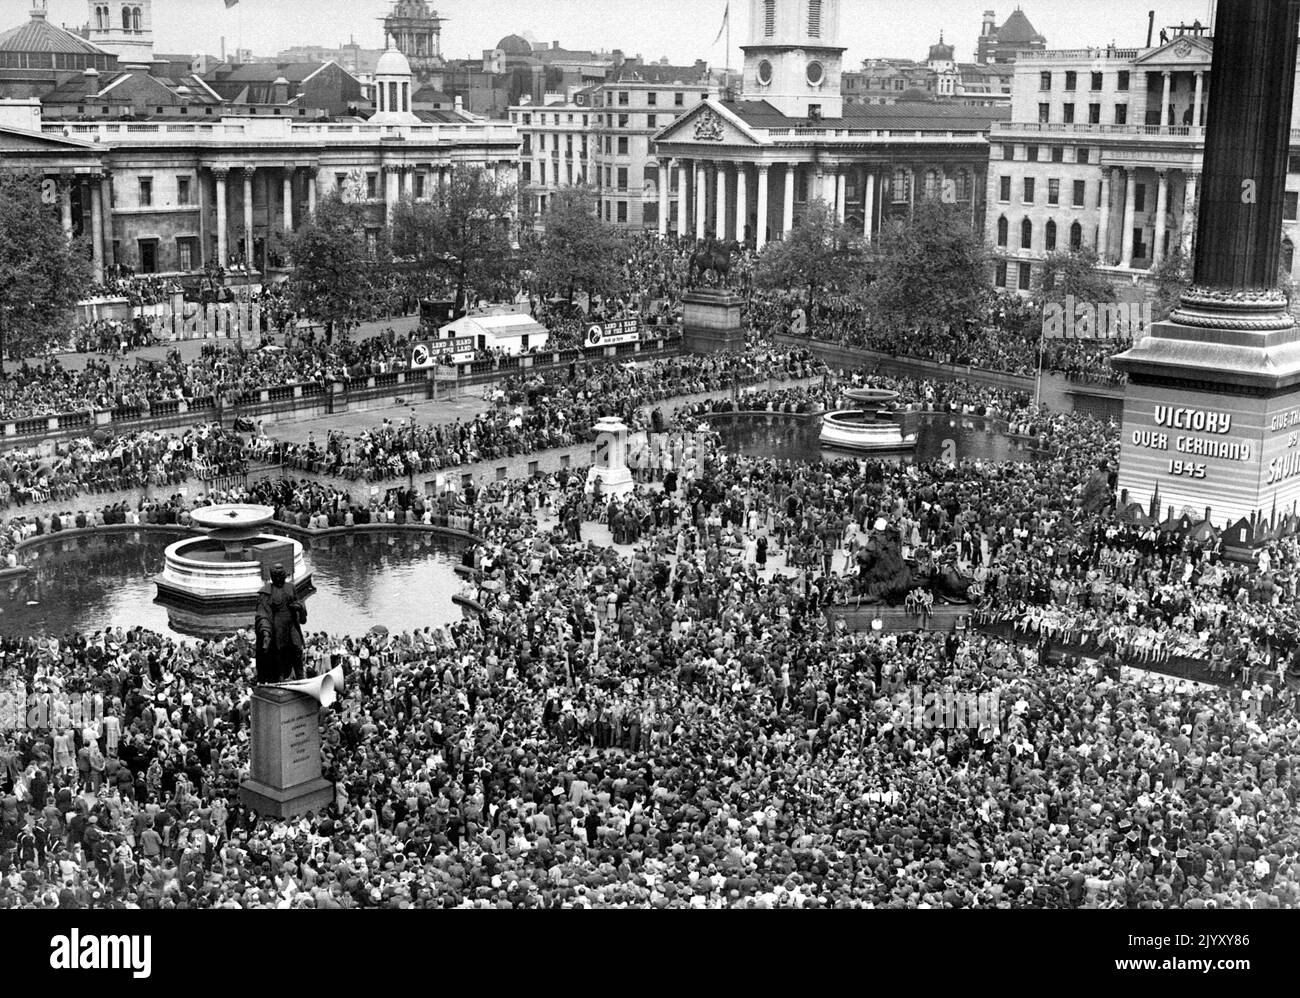 1945: Photo de dossier datée du 1945 mai d'immenses foules à Trafalgar Square célébrant la Journée VE (victoire en Europe) à Londres, marquant la fin de la Seconde Guerre mondiale en Europe et la défaite de l'Allemagne nazie. Date de publication : jeudi 8 septembre 2022. Banque D'Images